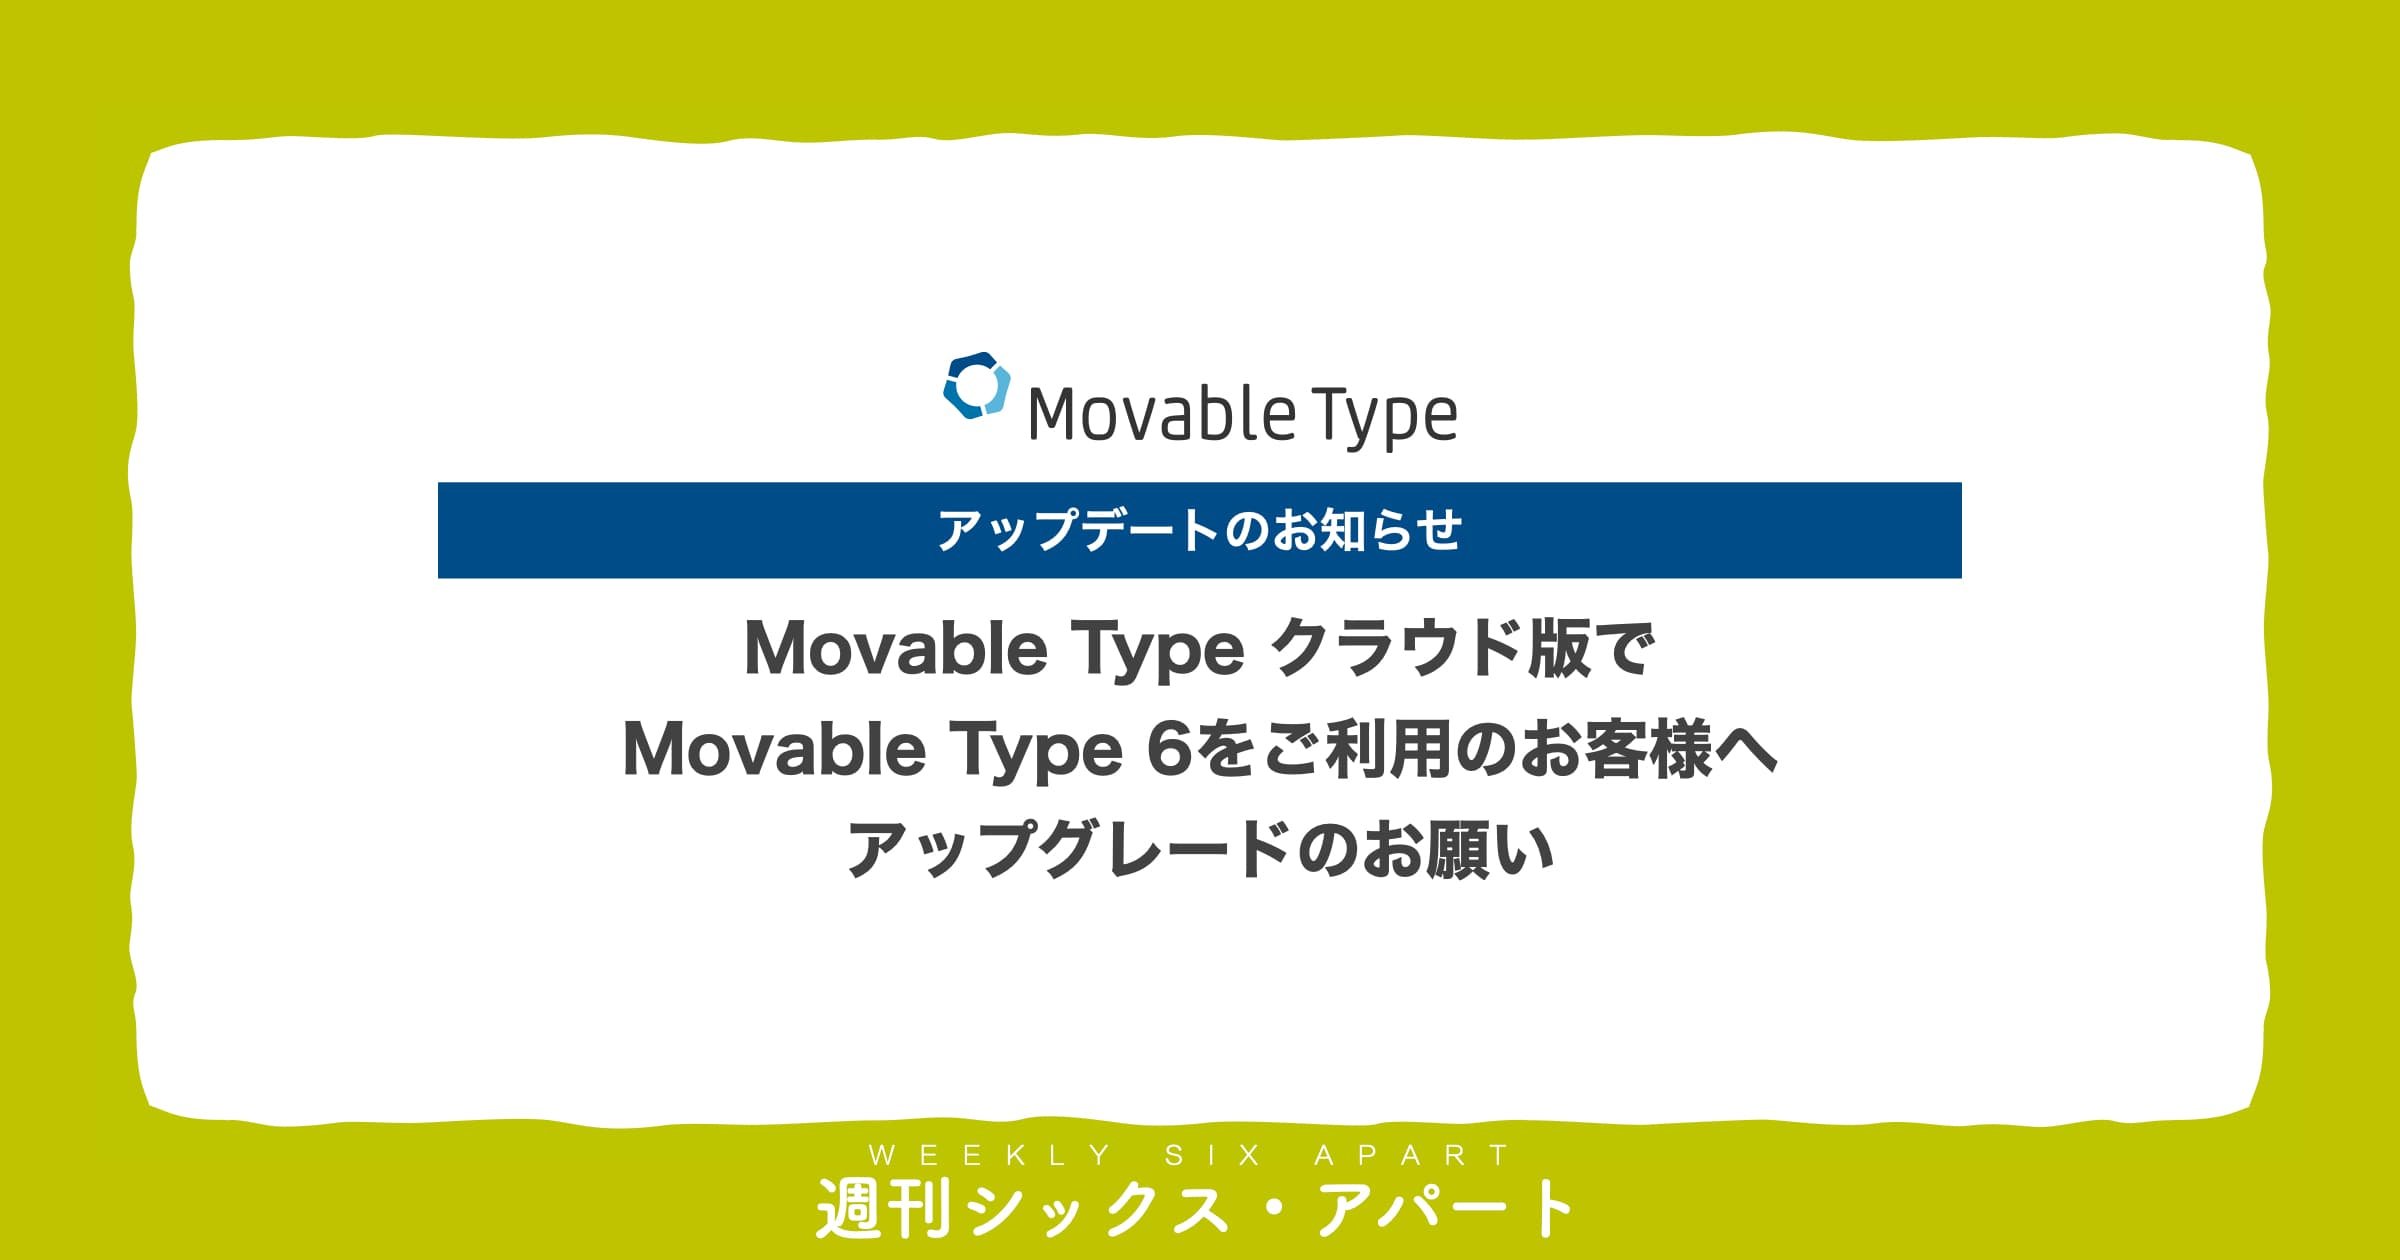 Movable Type クラウド版でMT6をご利用のお客様へ、MT7へのアップグレードのご検討をお願いします #週刊SA